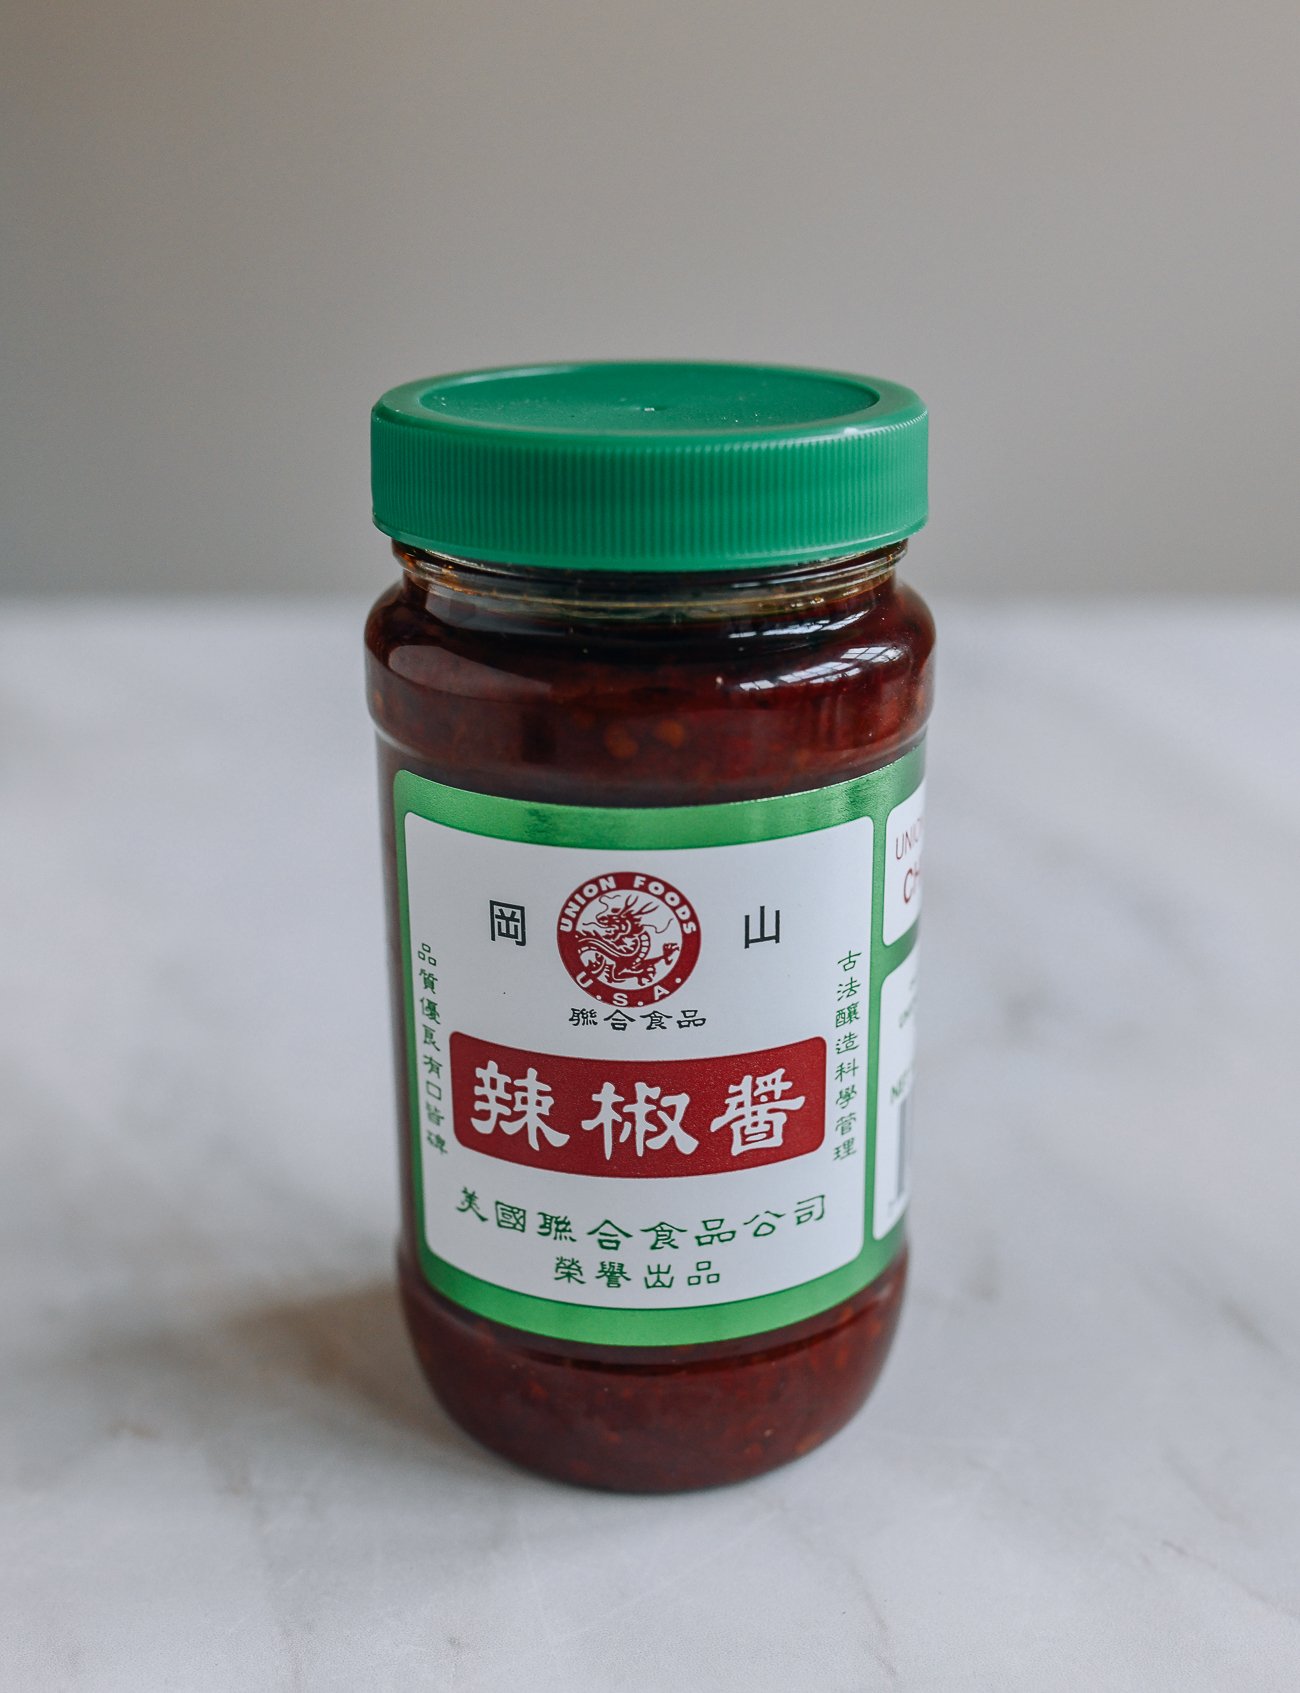 Chinese Chili Sauce